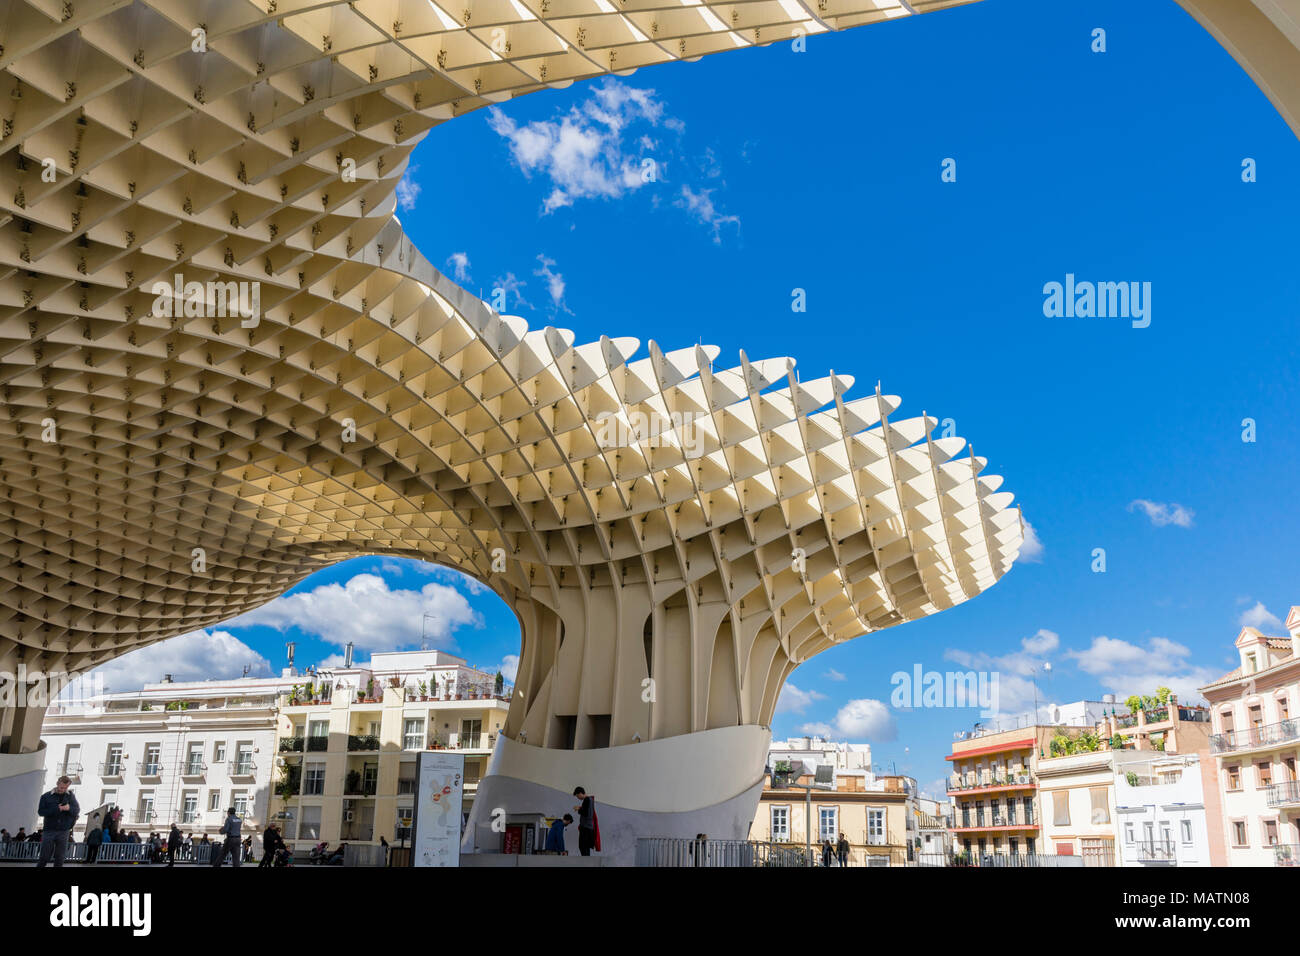 Le Metropol Parasol en 2018 - une grande structure en bois moderne conçu par l'architecte allemand Jürgen Mayer à Séville contre le ciel bleu, Andalousie, Espagne Banque D'Images